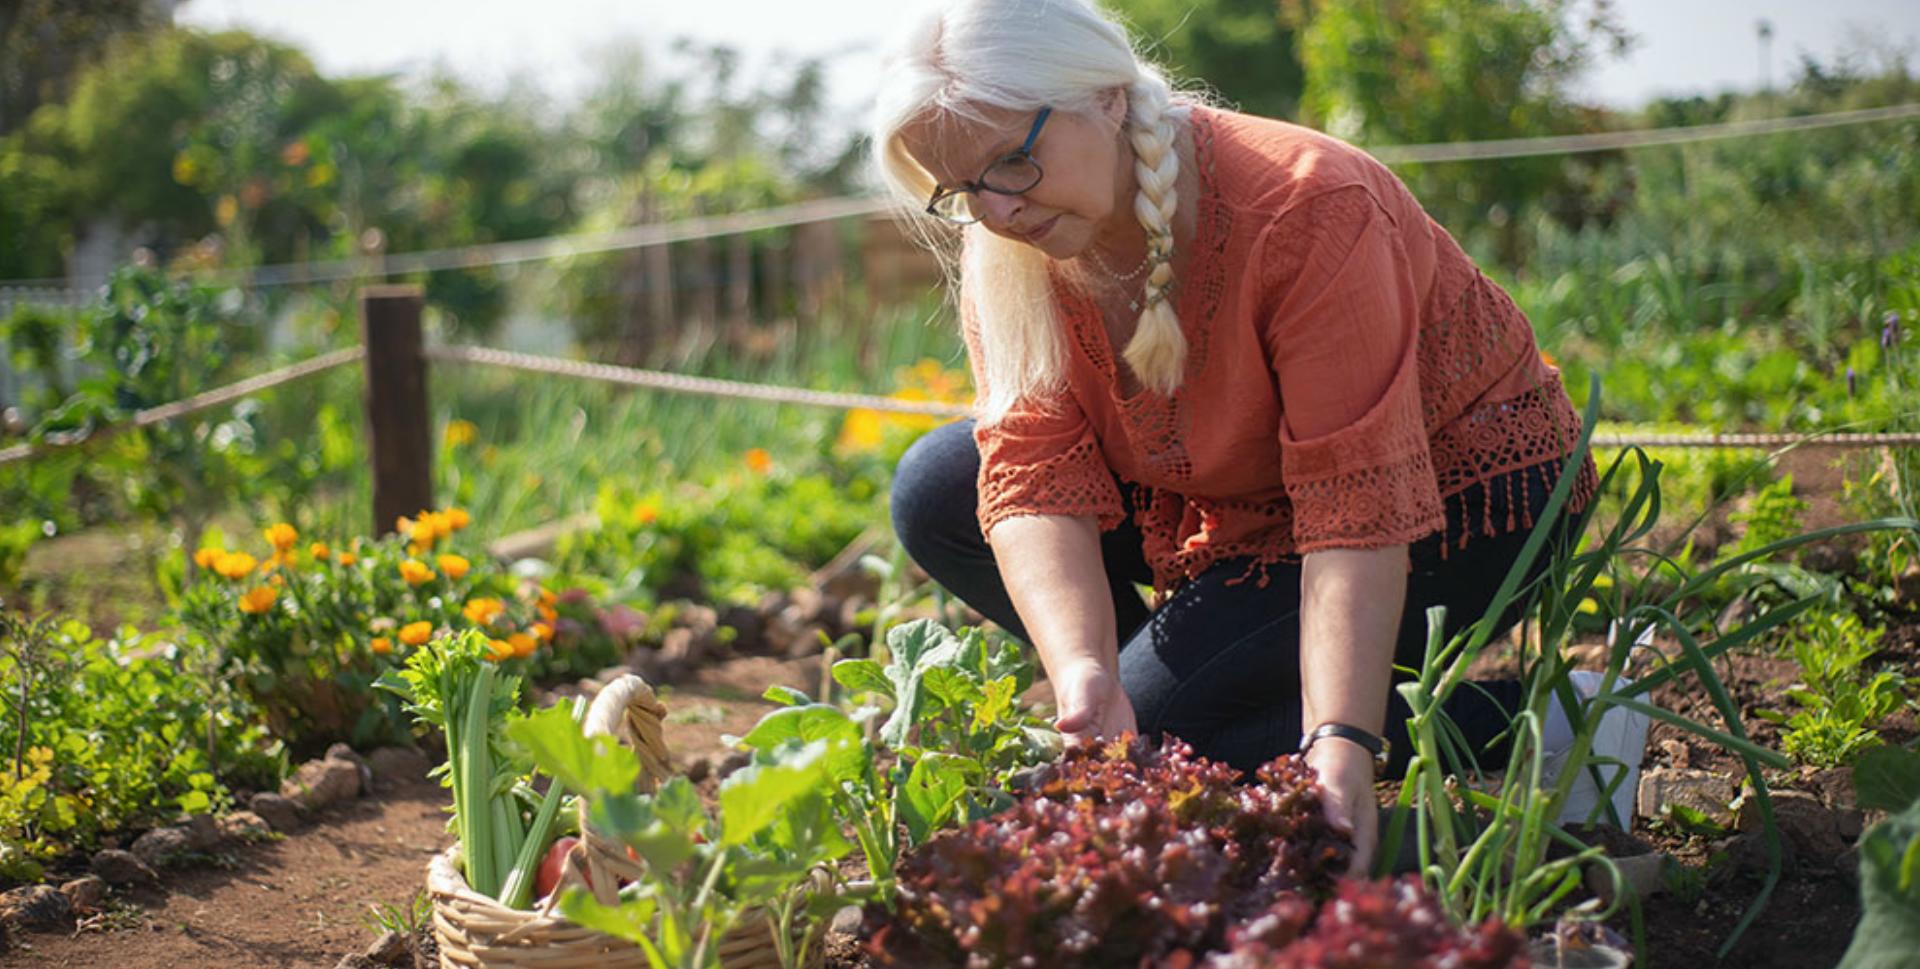 James Dyson cliënt Bejaarden Leer je eigen biologische groenten kweken - Omroep NOOS